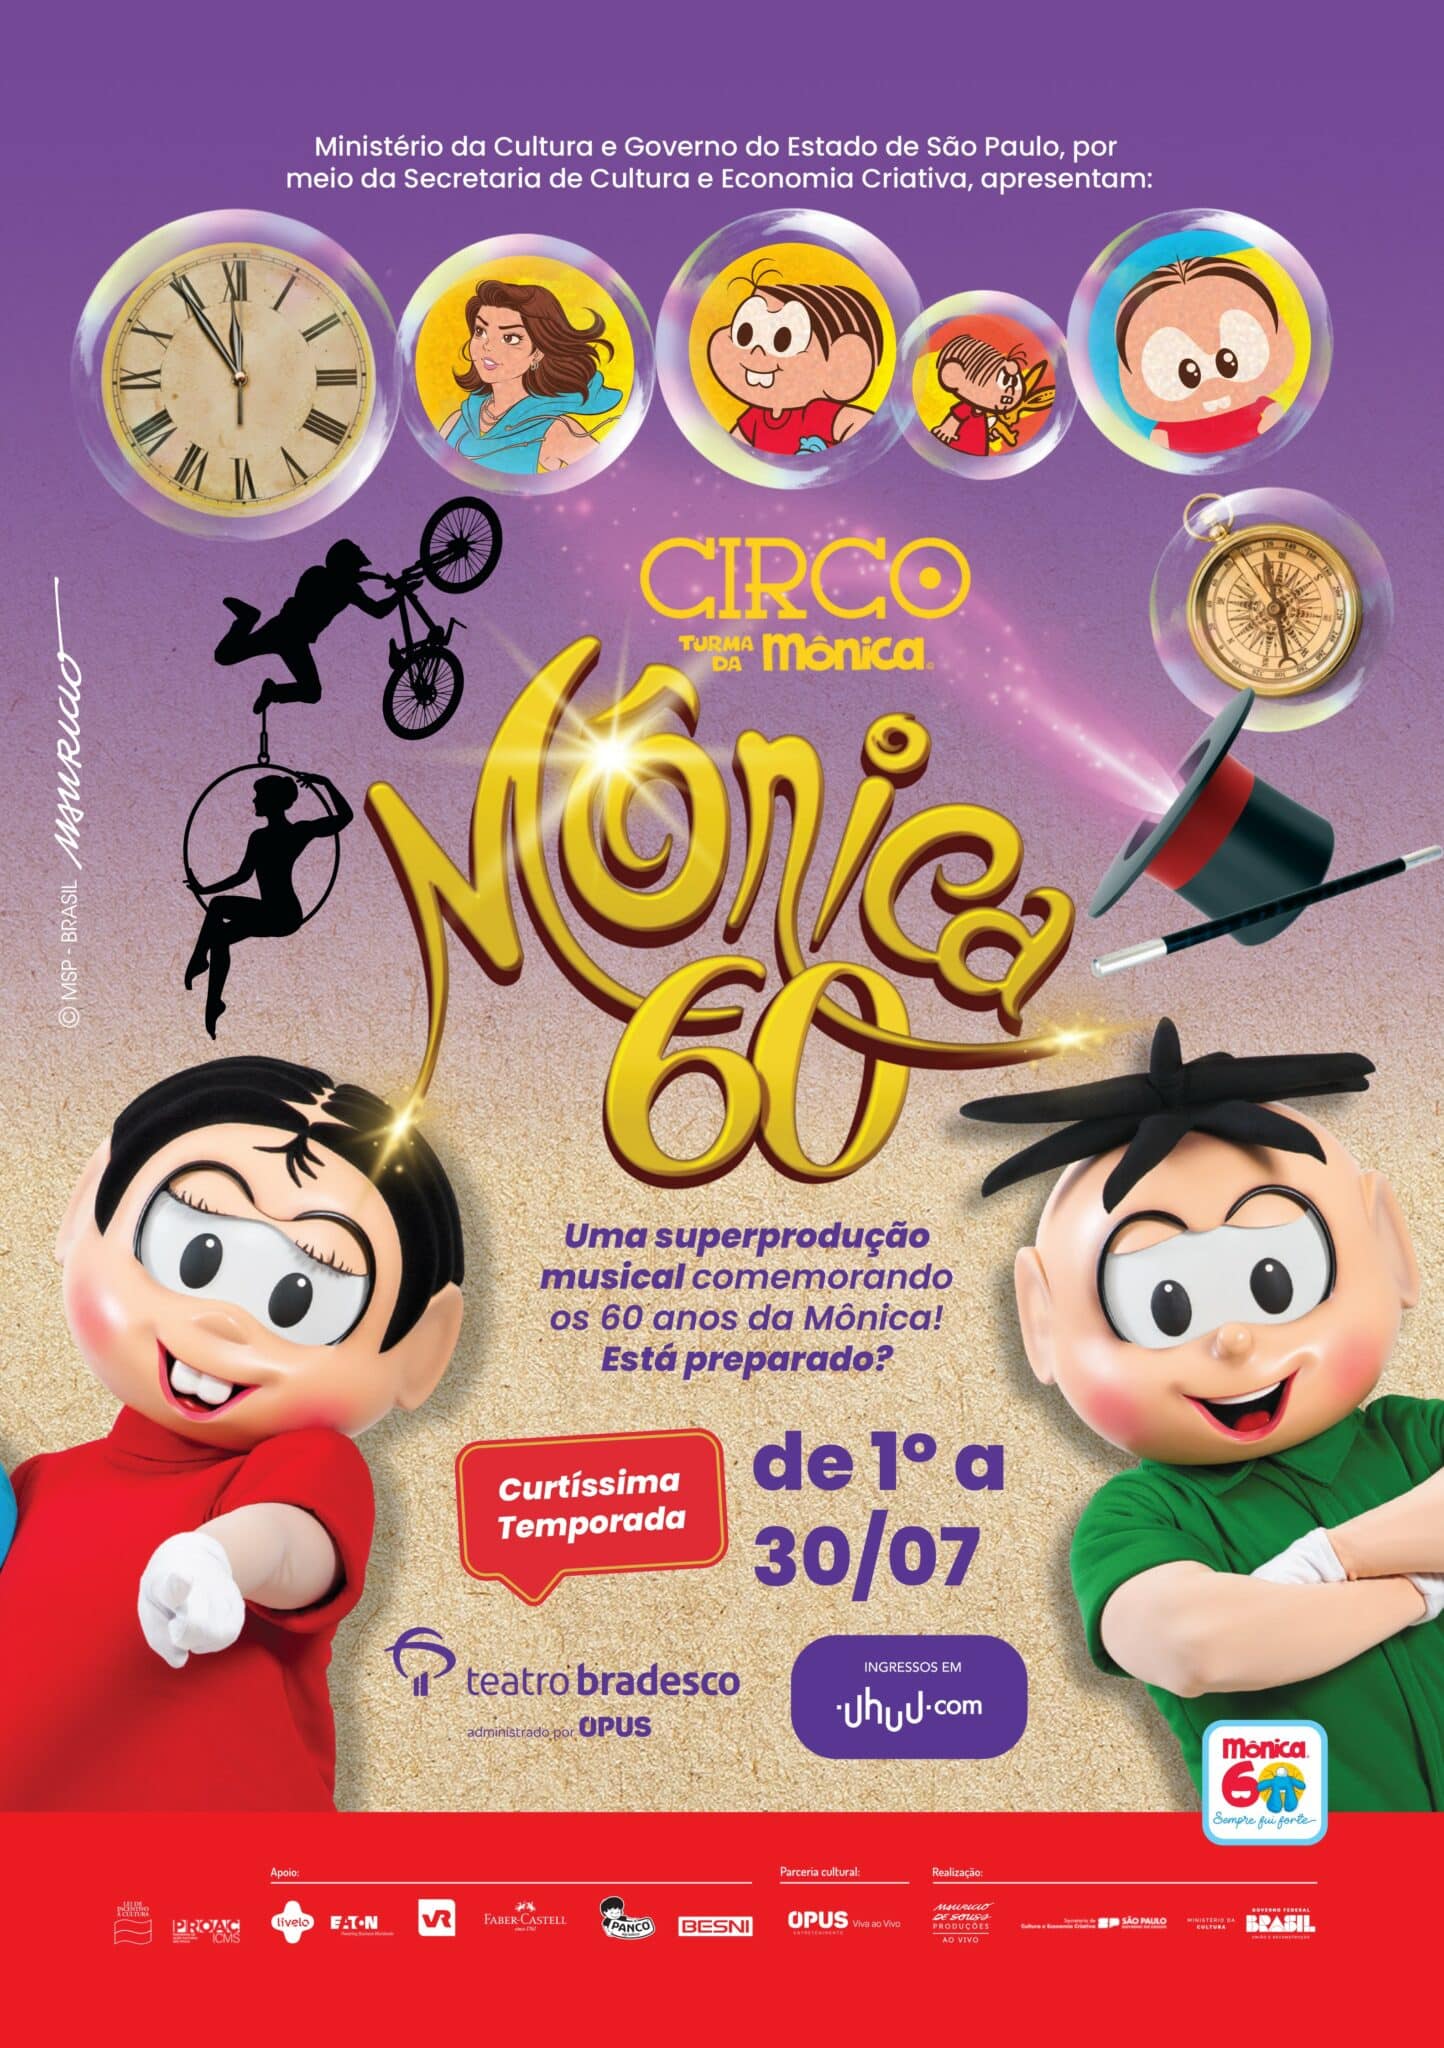 Cidade das Artes - Programação - Circo Turma da Mônica - Mônica 60